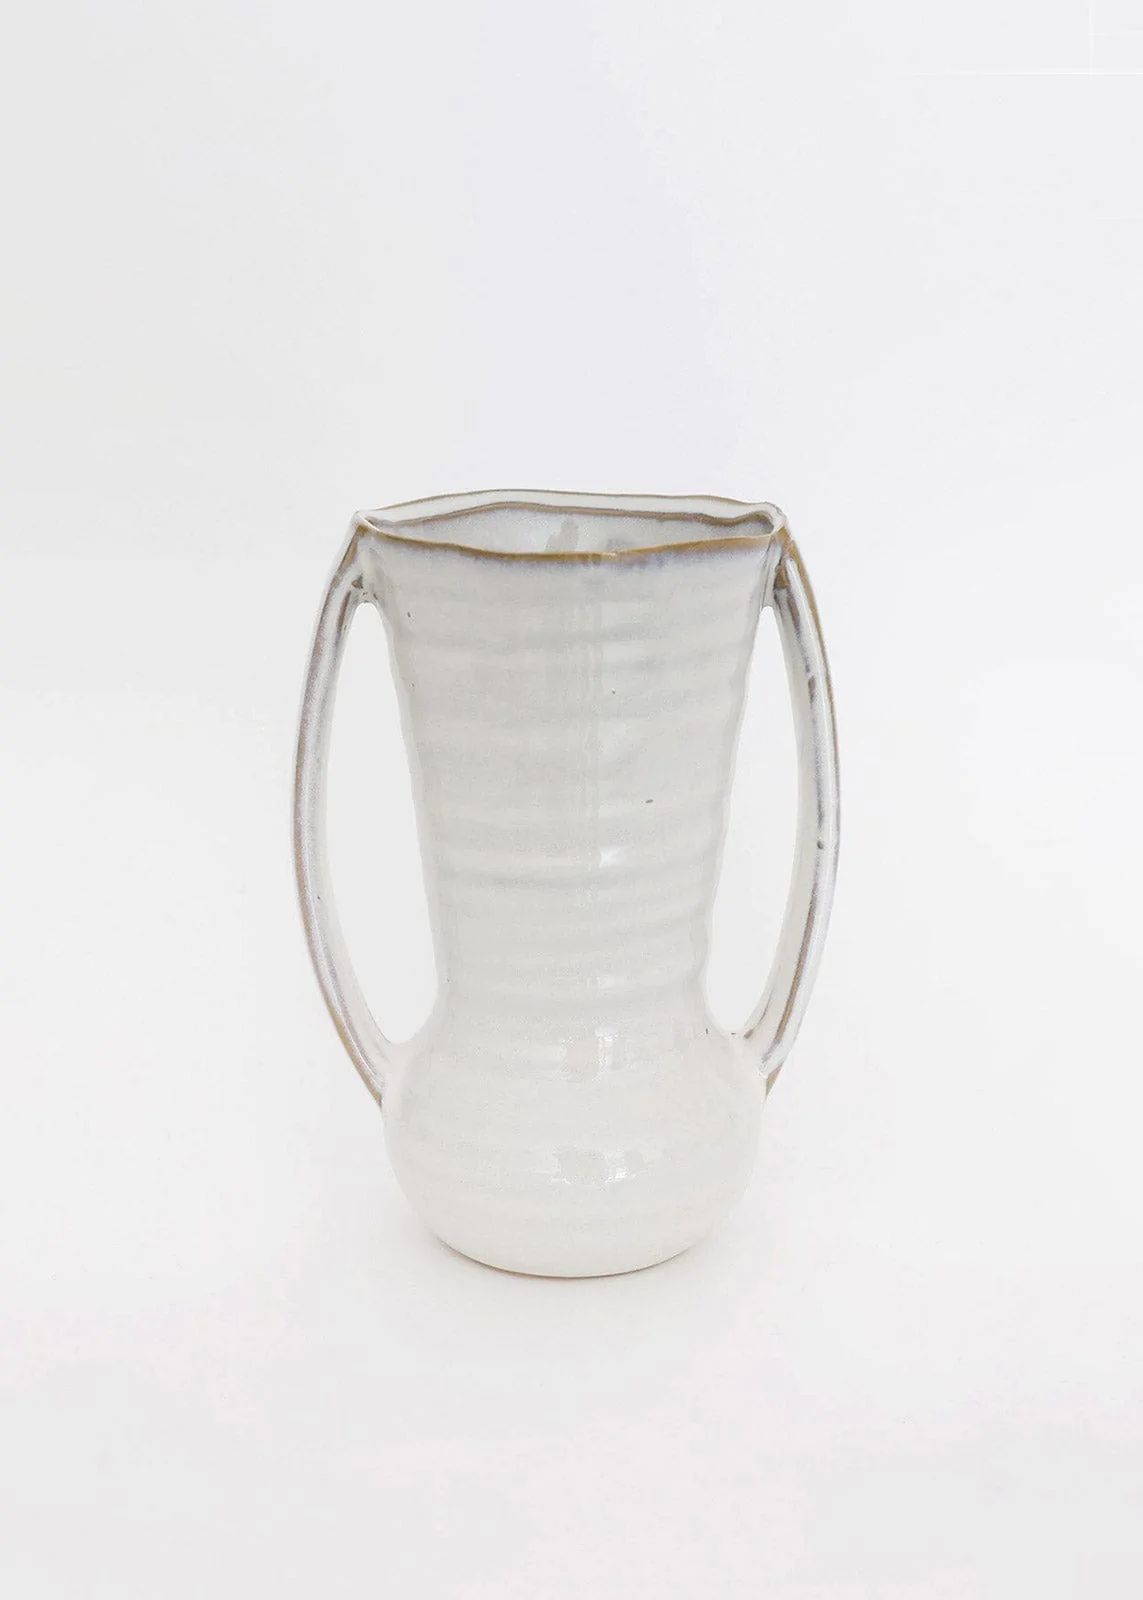 Amphora Curved Vase with Handles | Ceramic Flower Vases | Afloral.com | Afloral